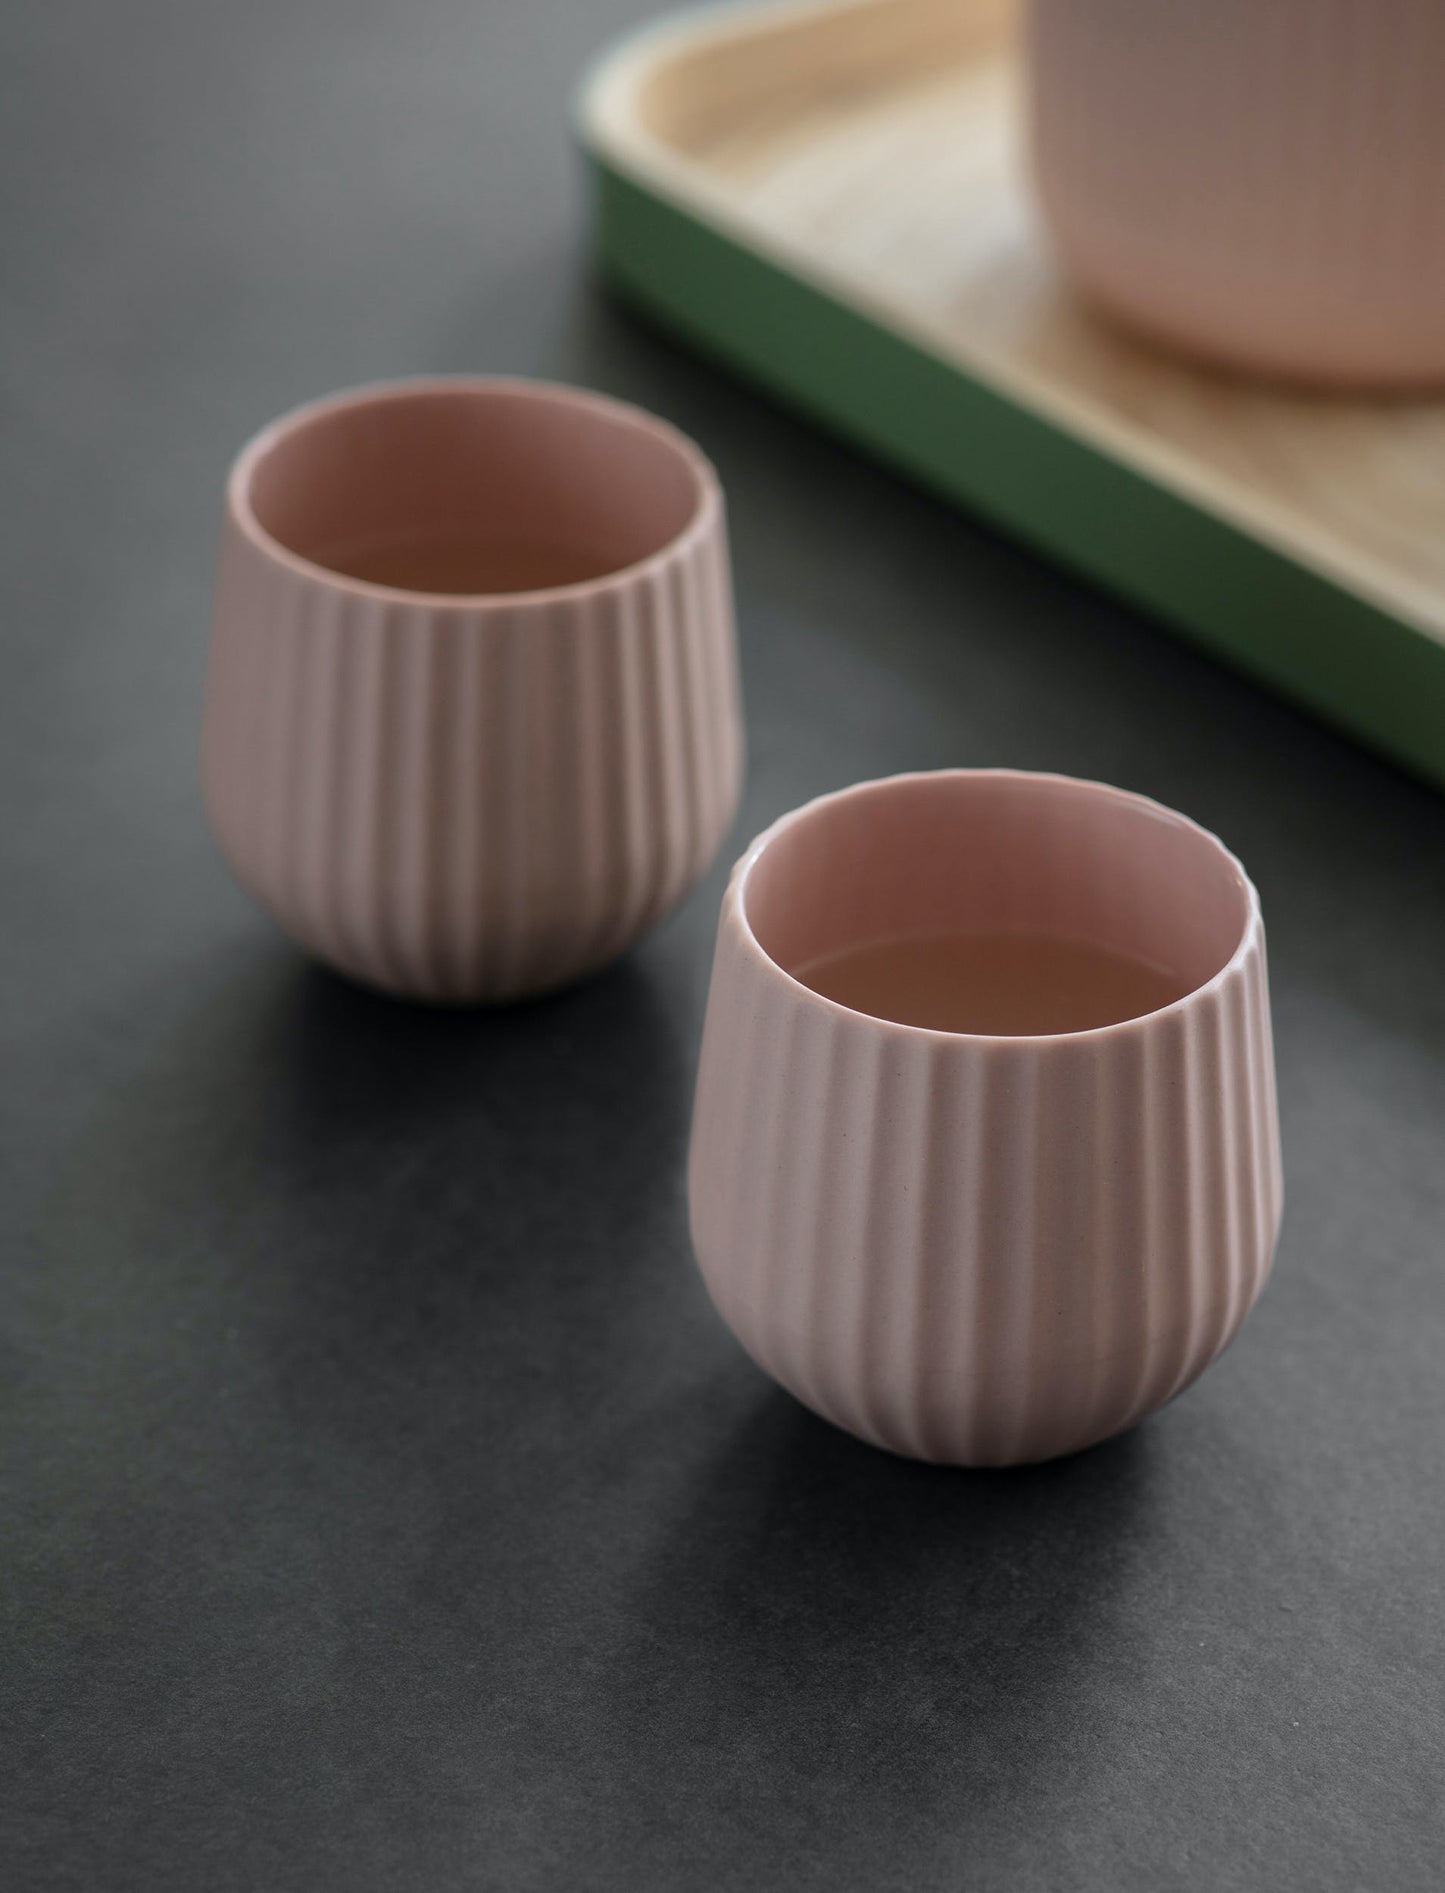 Pair of Ceramic Tumblers in Pink Gin